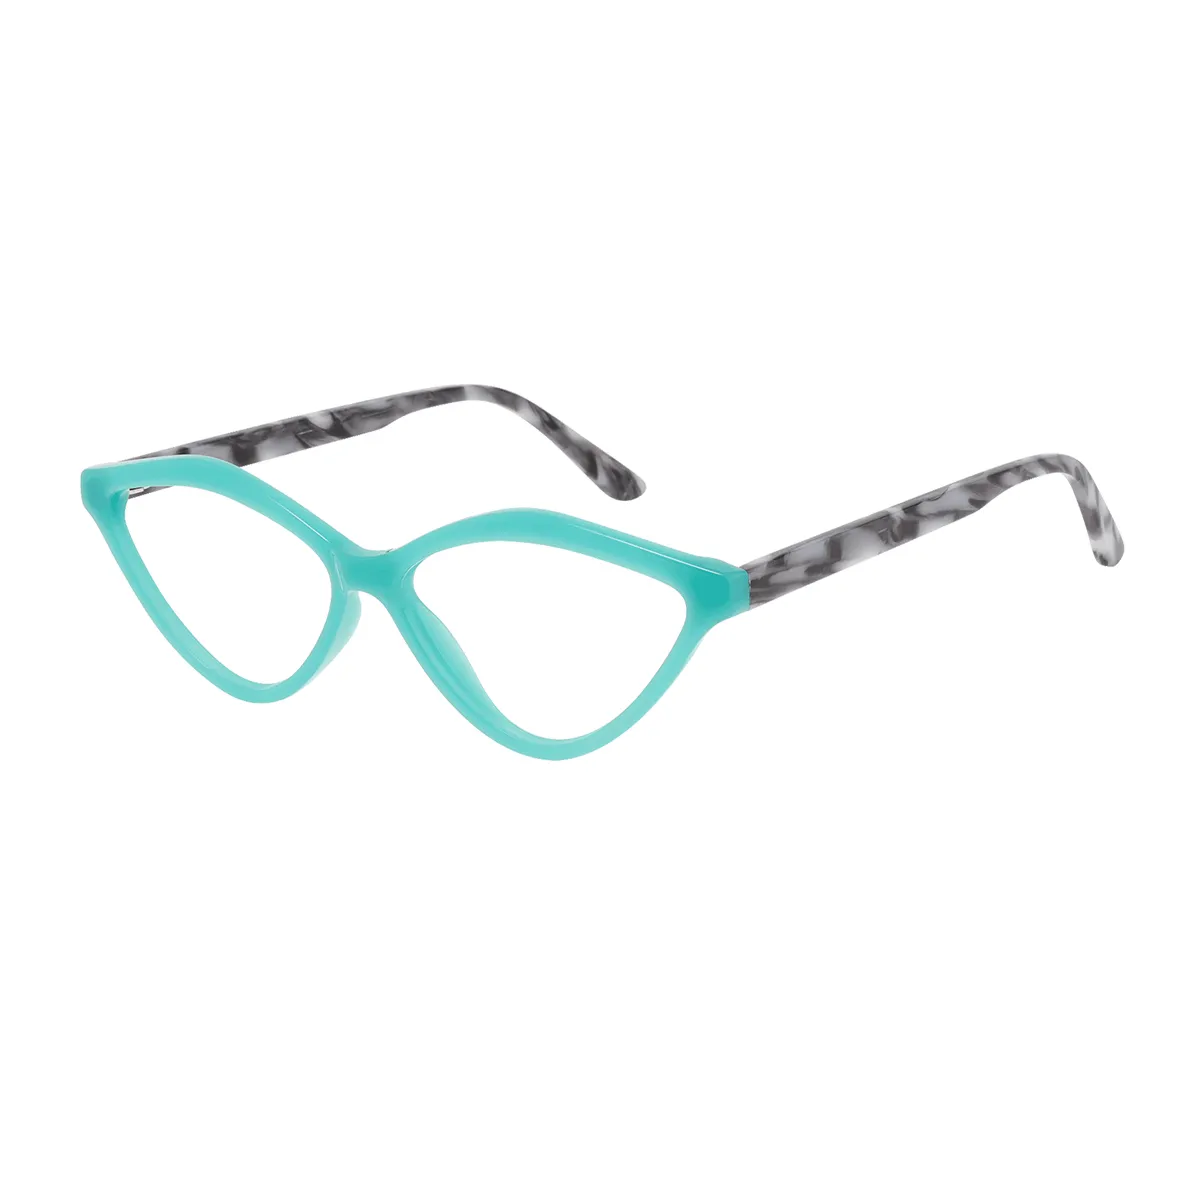 Naomi - Cat-eye Green-Tortoiseshell Glasses for Women